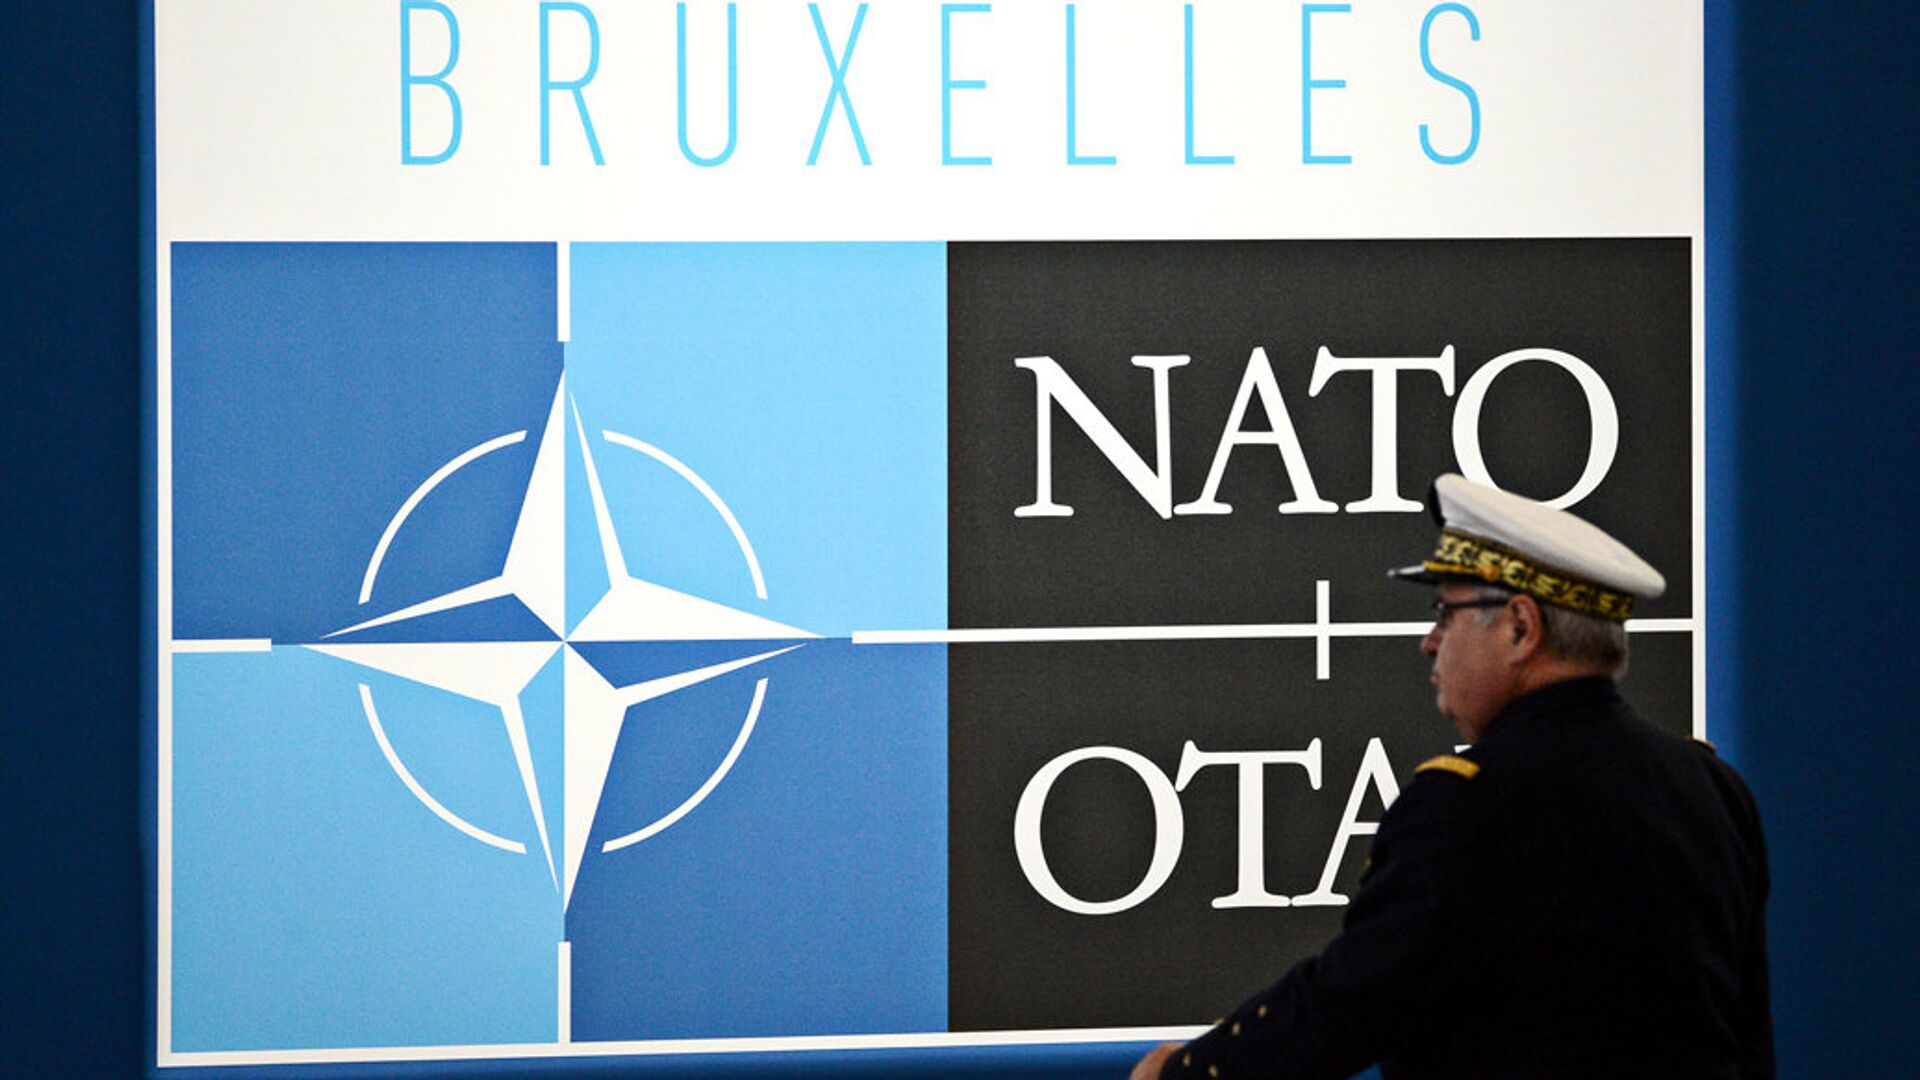 Пентагон: США стремятся к стабильности и предсказуемости между РФ и НАТО в Евро-Атлантике